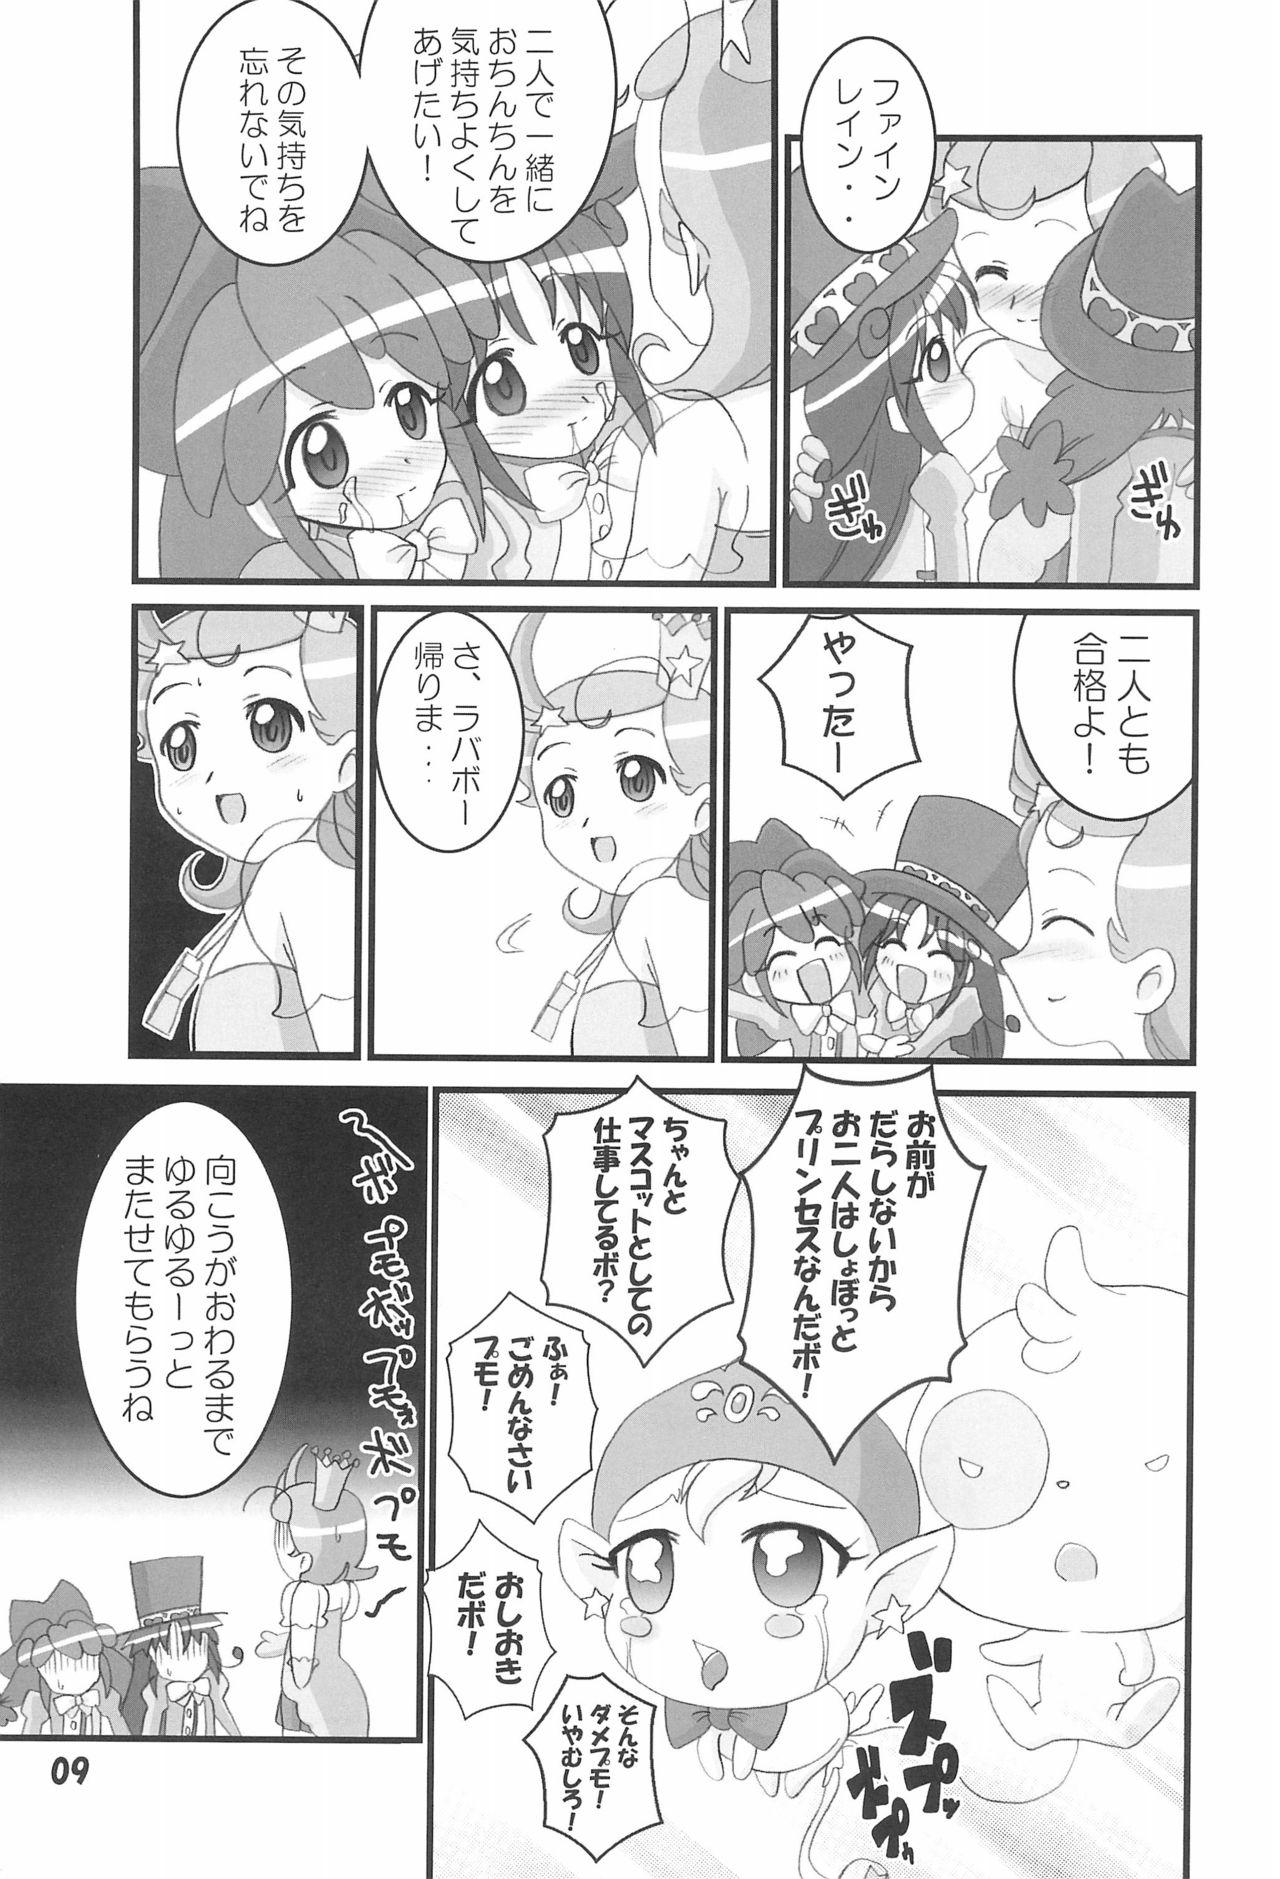 Sucking FutaCome - Fushigiboshi no futagohime Cosmic baton girl comet-san Inked - Page 9